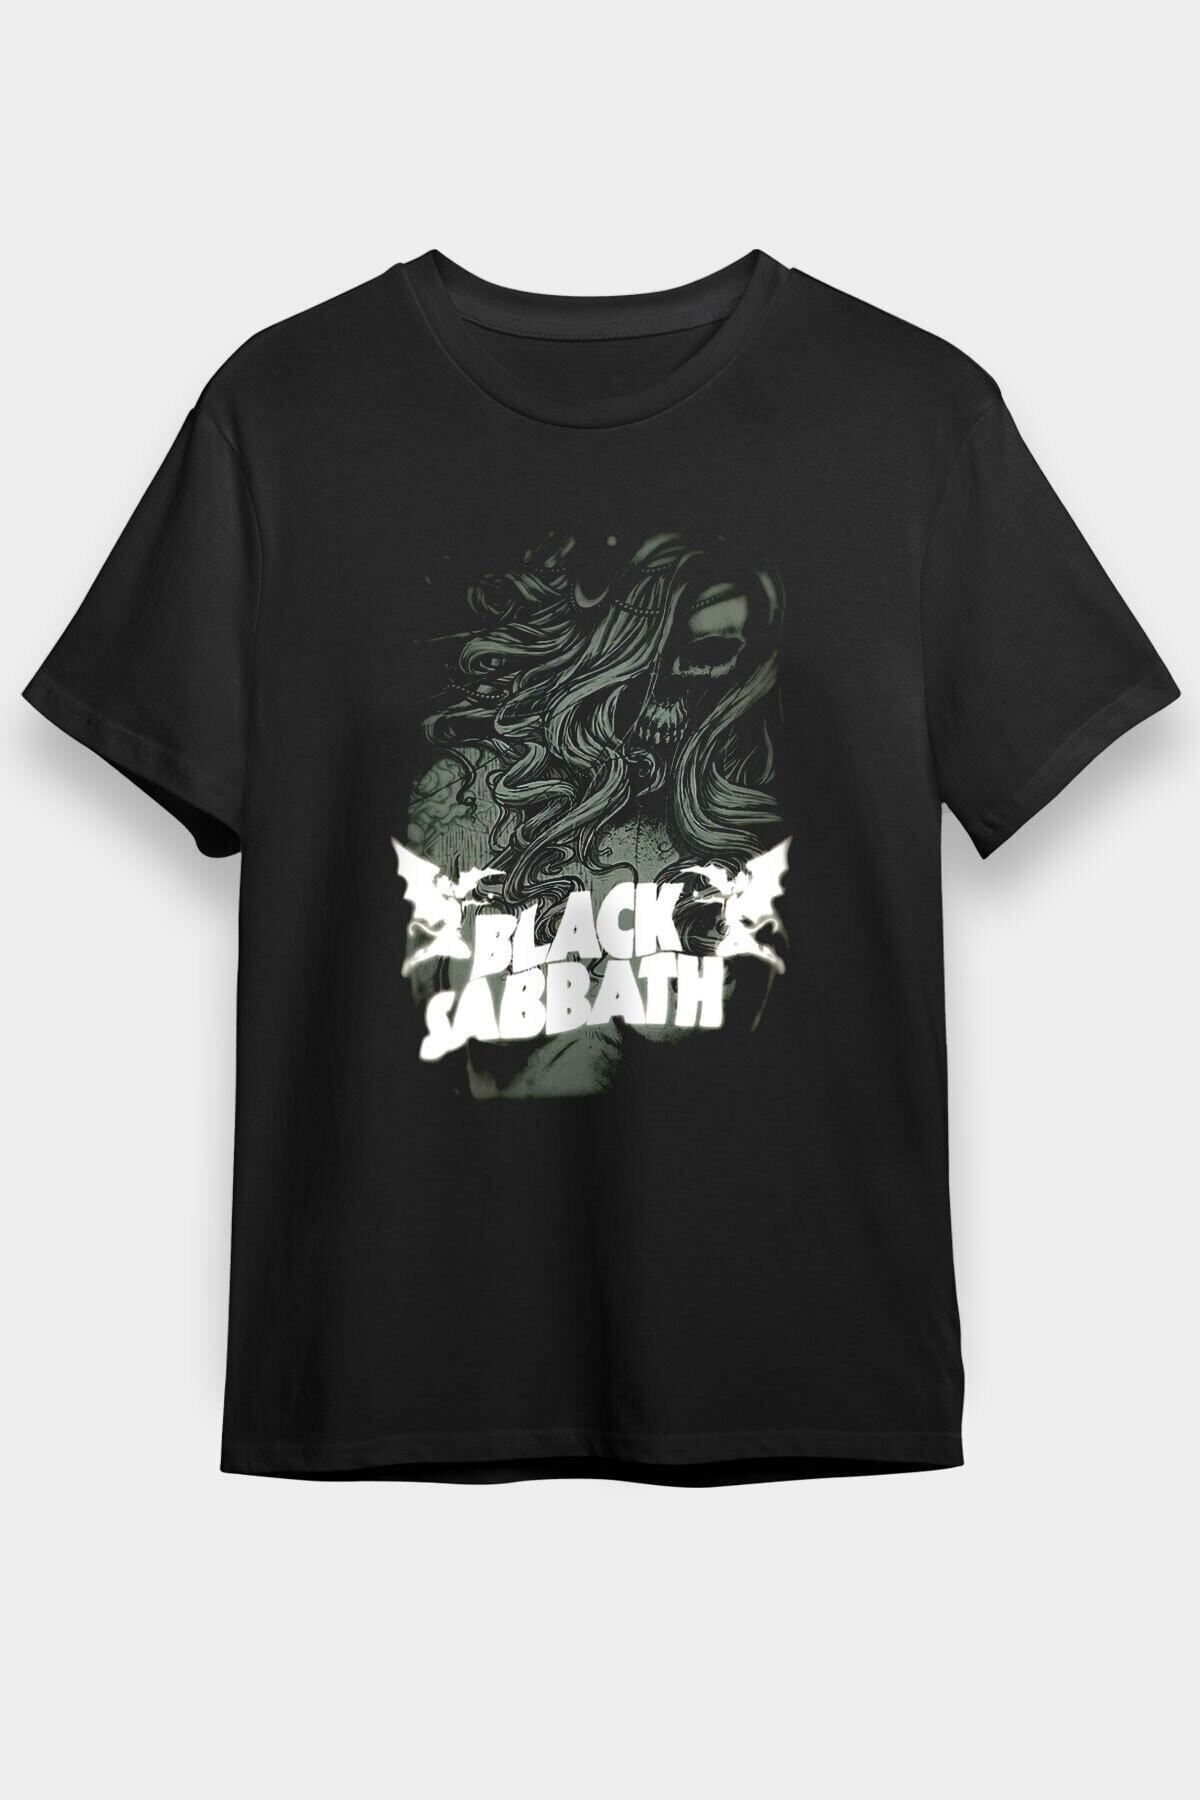 ZOKAWEAR Unisex Bol Kalıp Black Sabbath Siyah Tişört T-shirt - Tişörtfabrikası